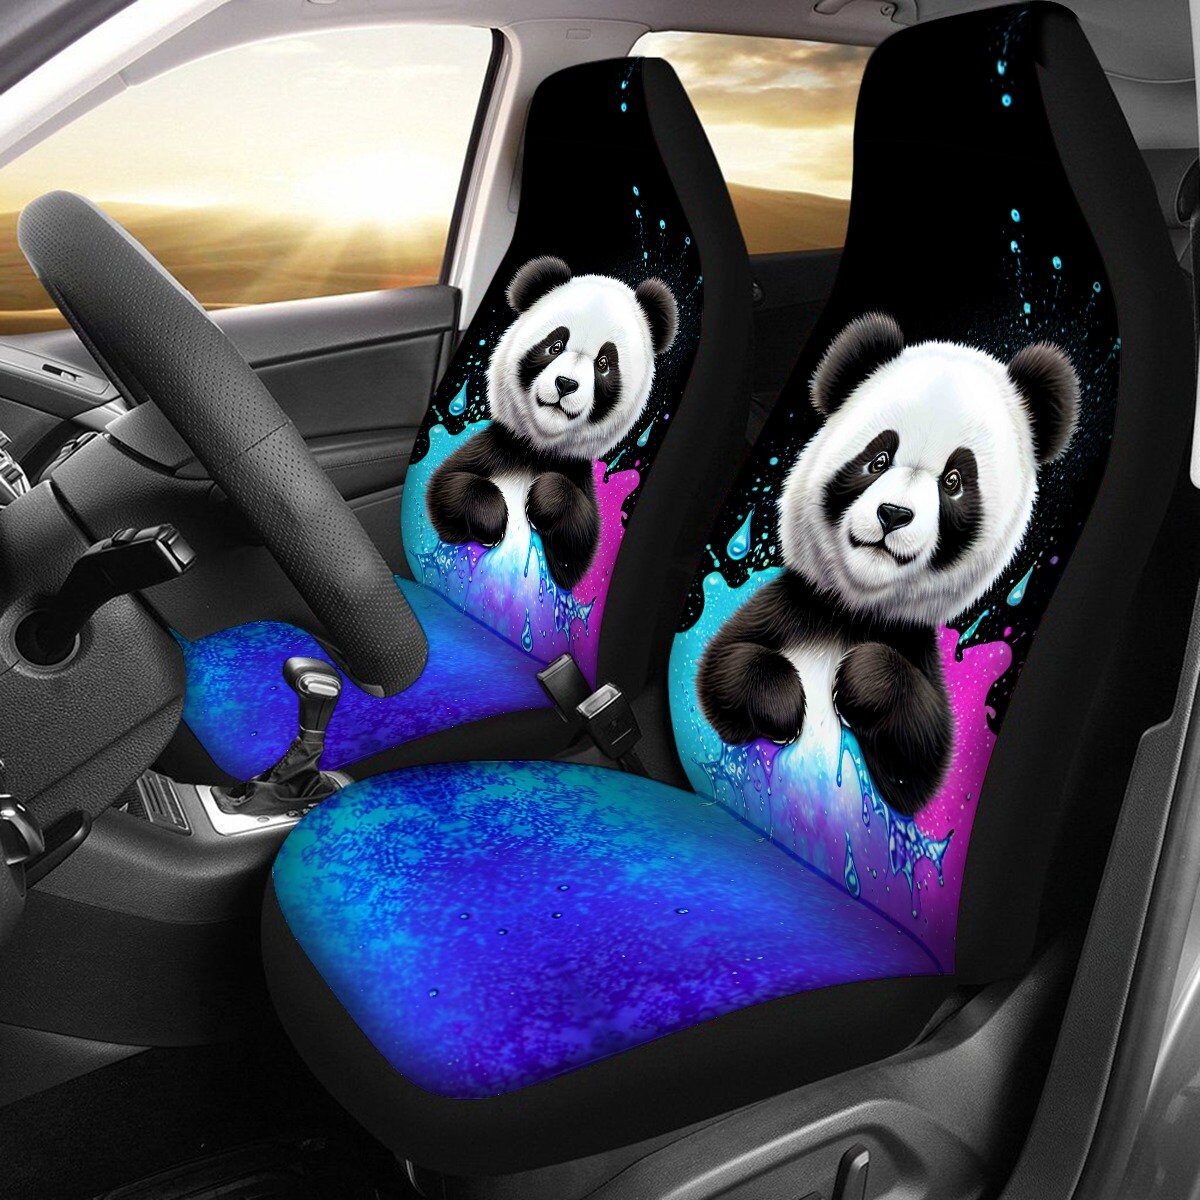 Panda Bear Car Seat Cover Slip Cushion Cute Cartoon Vibrant Universal